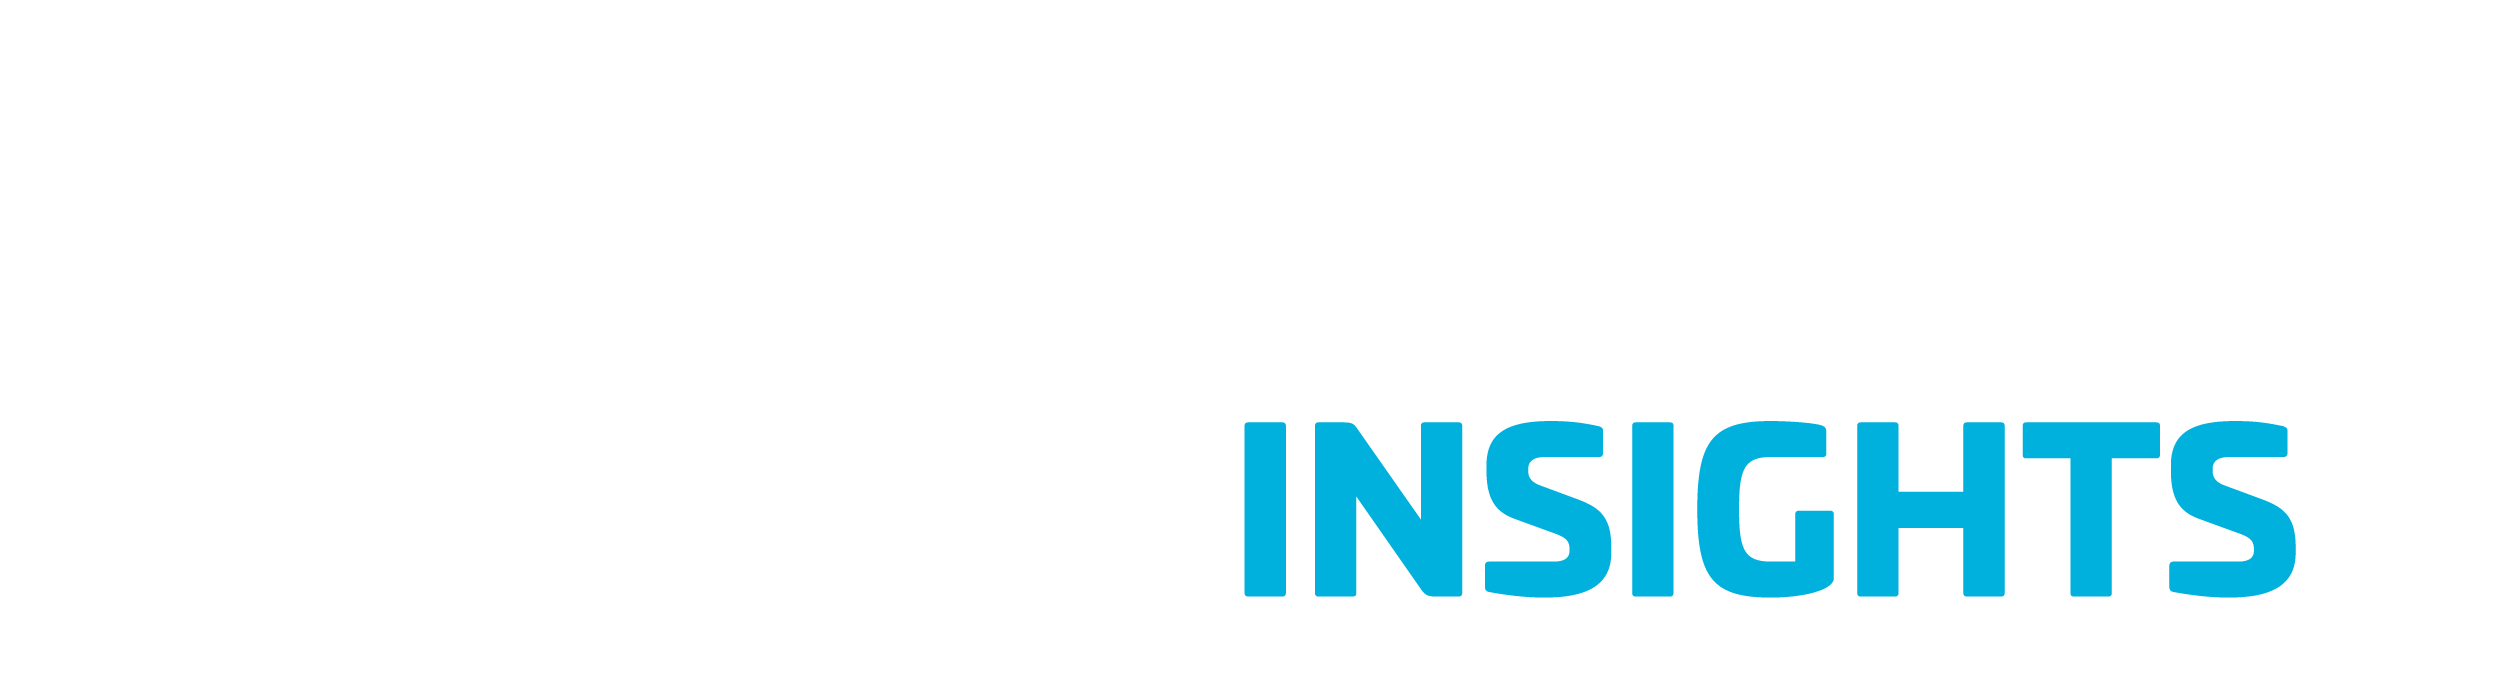 BuiltWorlds_Insights_logo_light-01